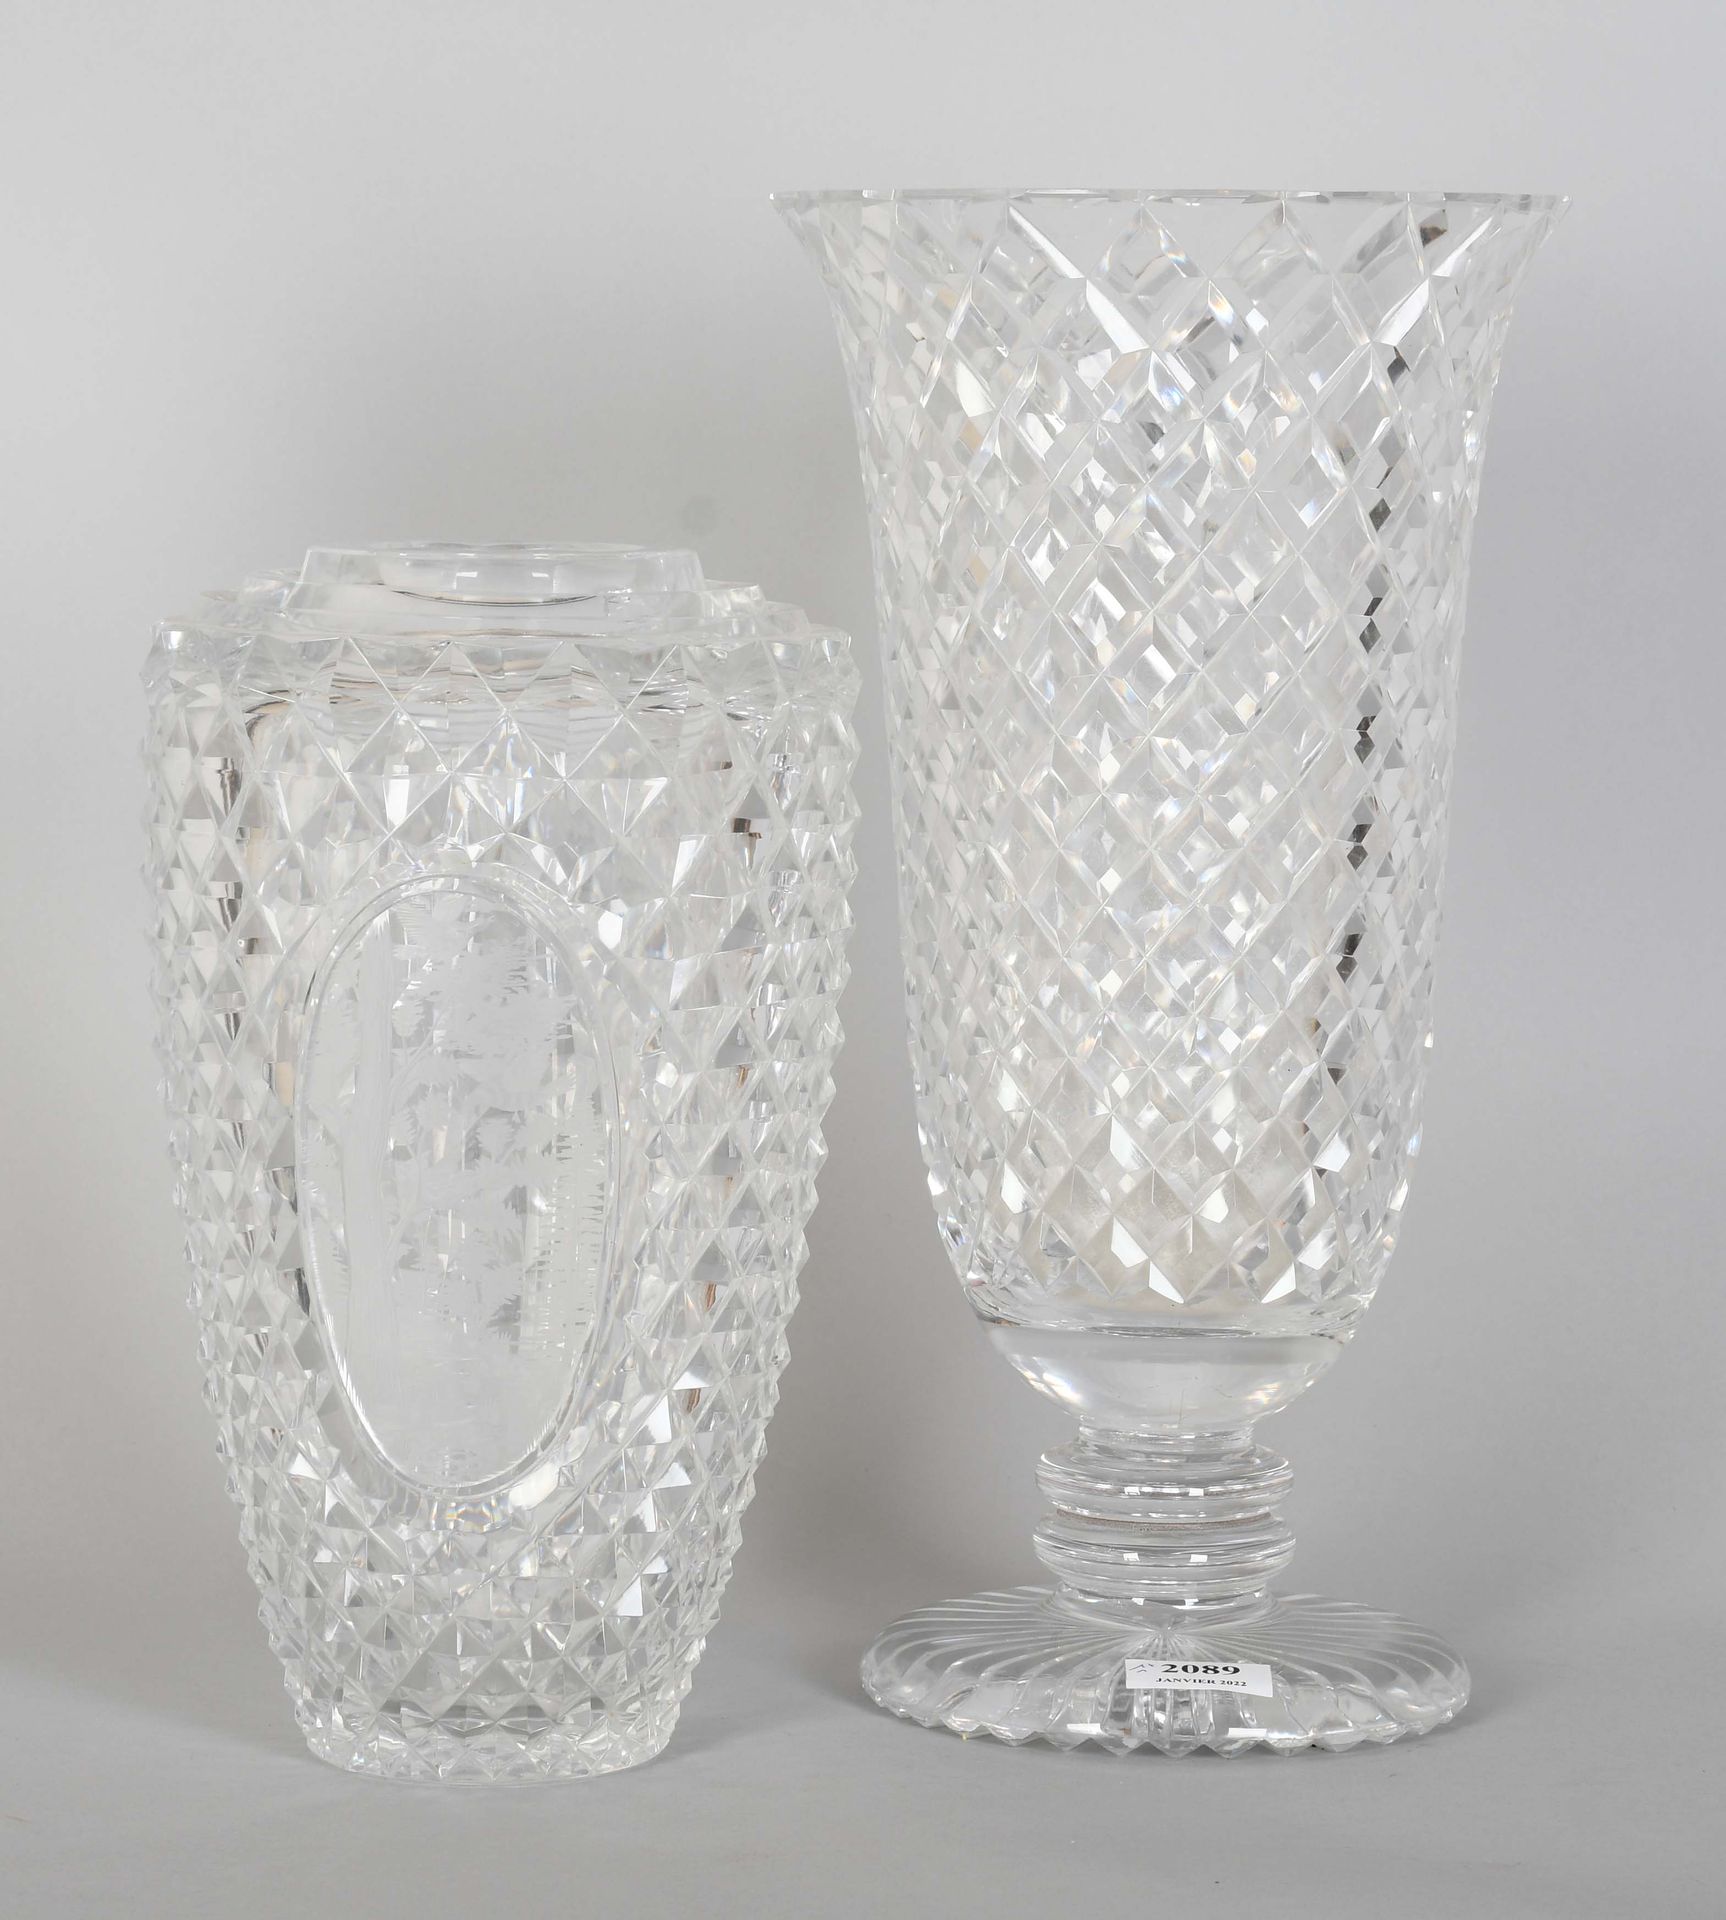 Null Un vaso più uno, in cristallo chiaro rabescato

Altezza: 40 cm.